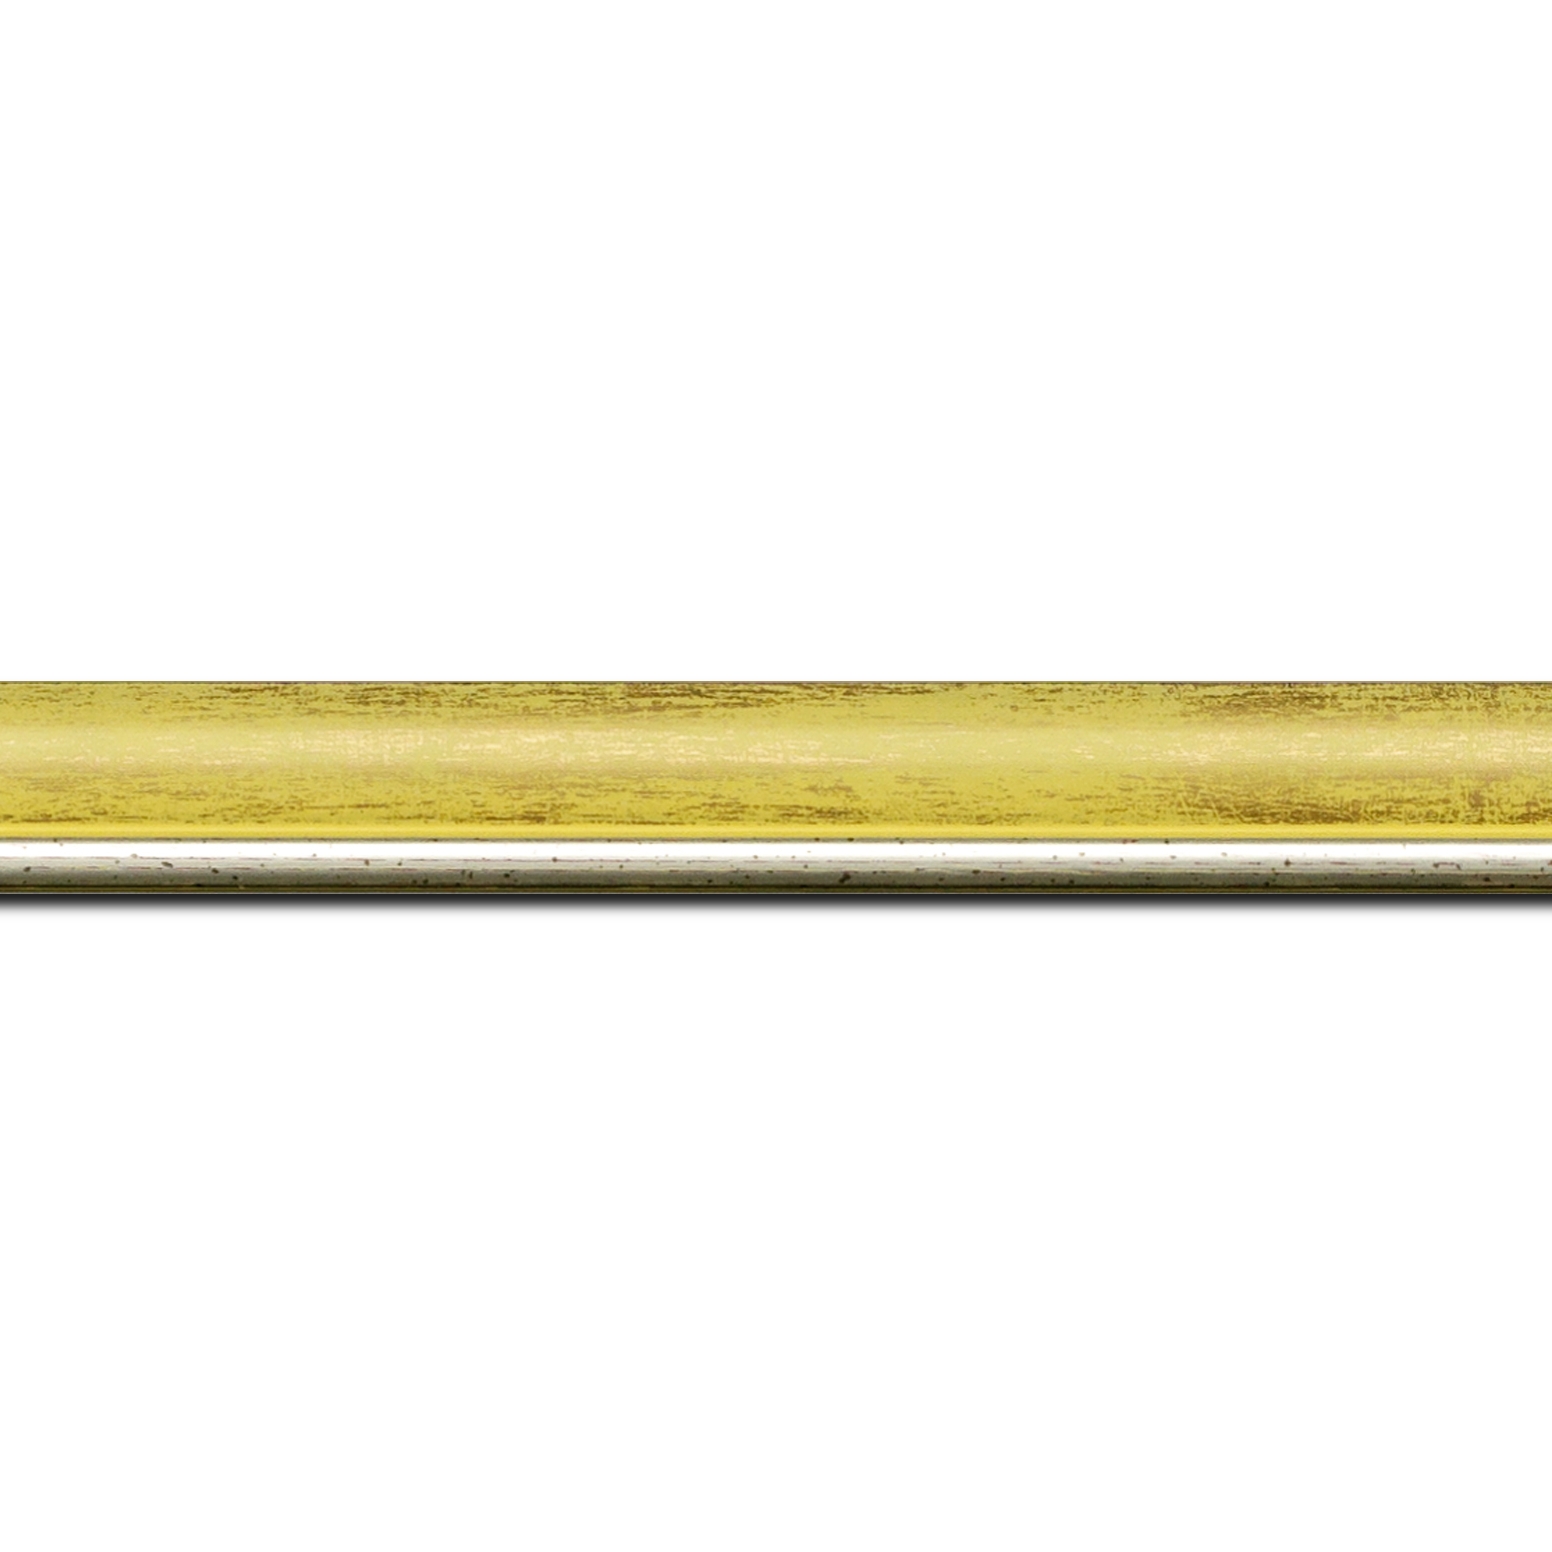 Baguette longueur 1.40m bois profil arrondi largeur 2.1cm  couleur  jaune fond or filet argent chaud